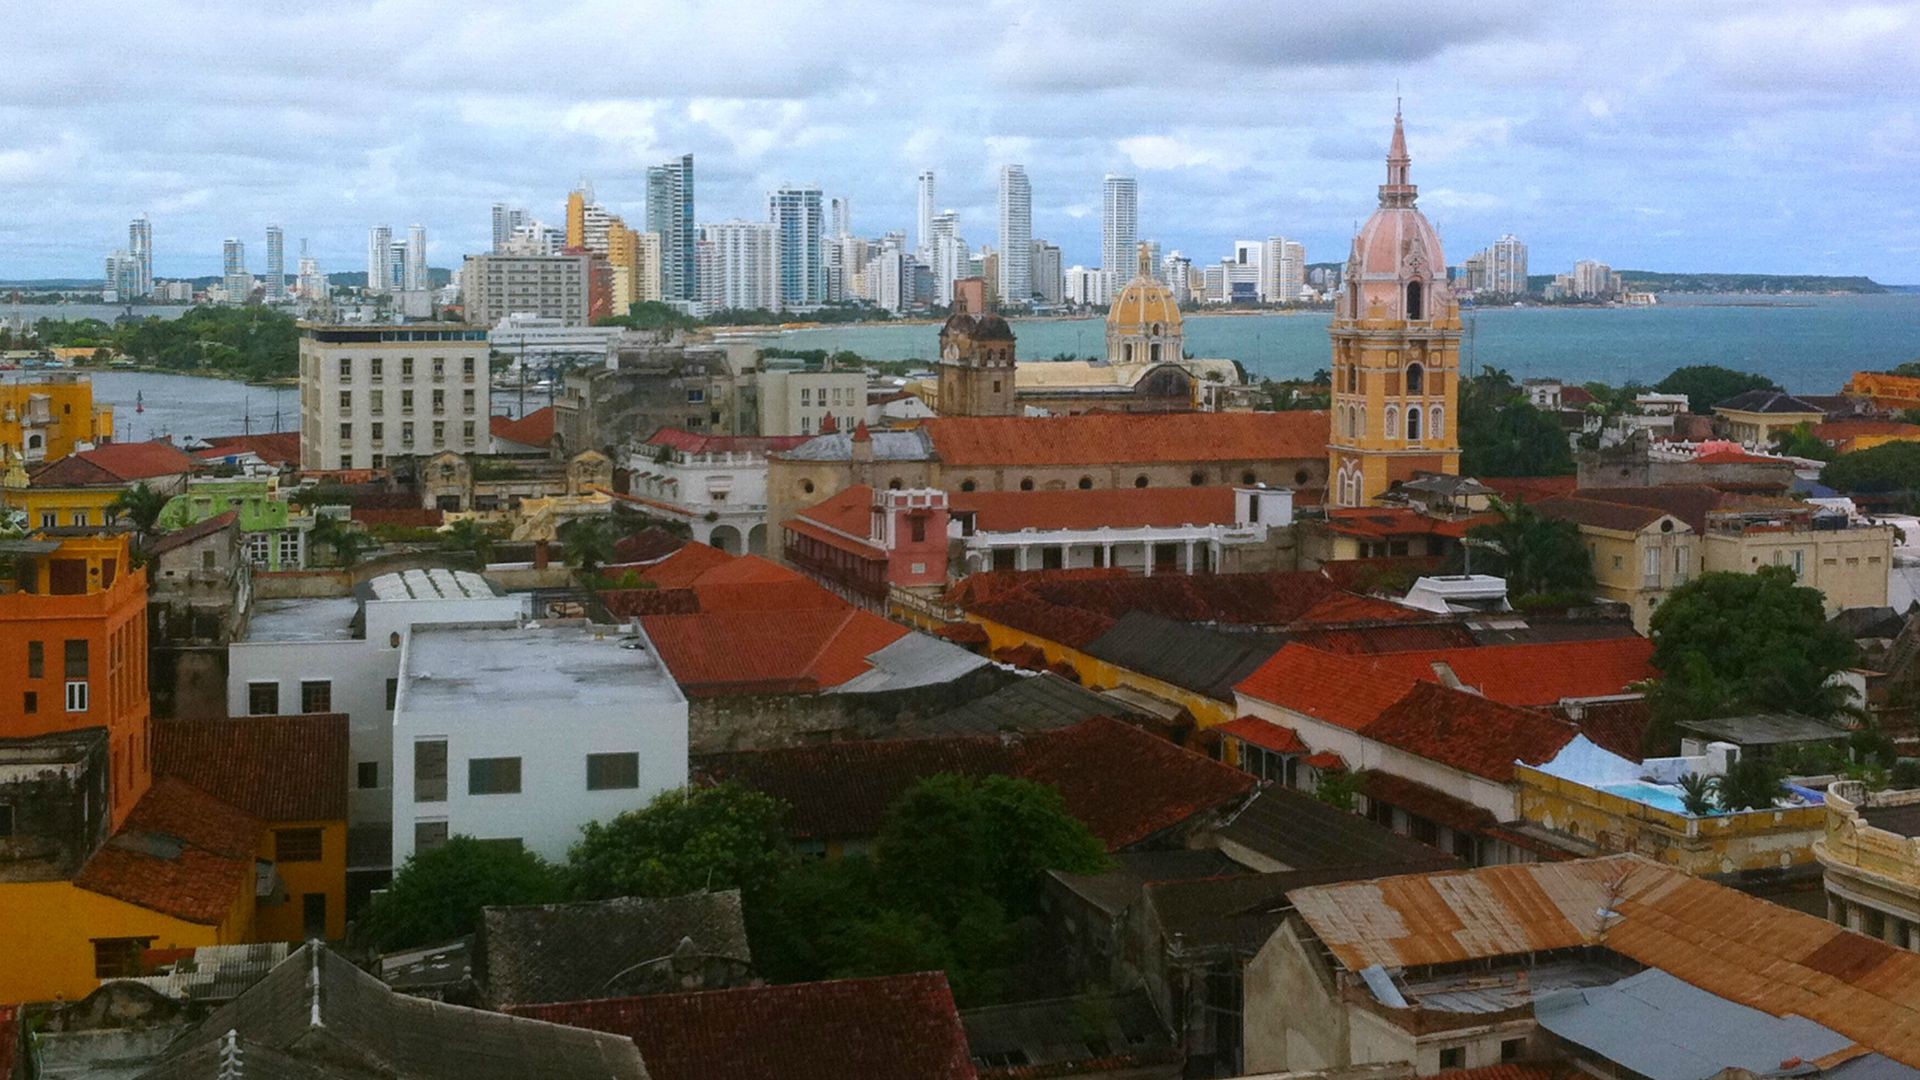 La ville de Cartagena de Indias, en Colombie, reçoit les  8e rencontres de la juridiction ordinaires "justice de transition, paix et post-conflit". (Photo: Flickr/Juanerre/CC BY-NC-ND 2.0)